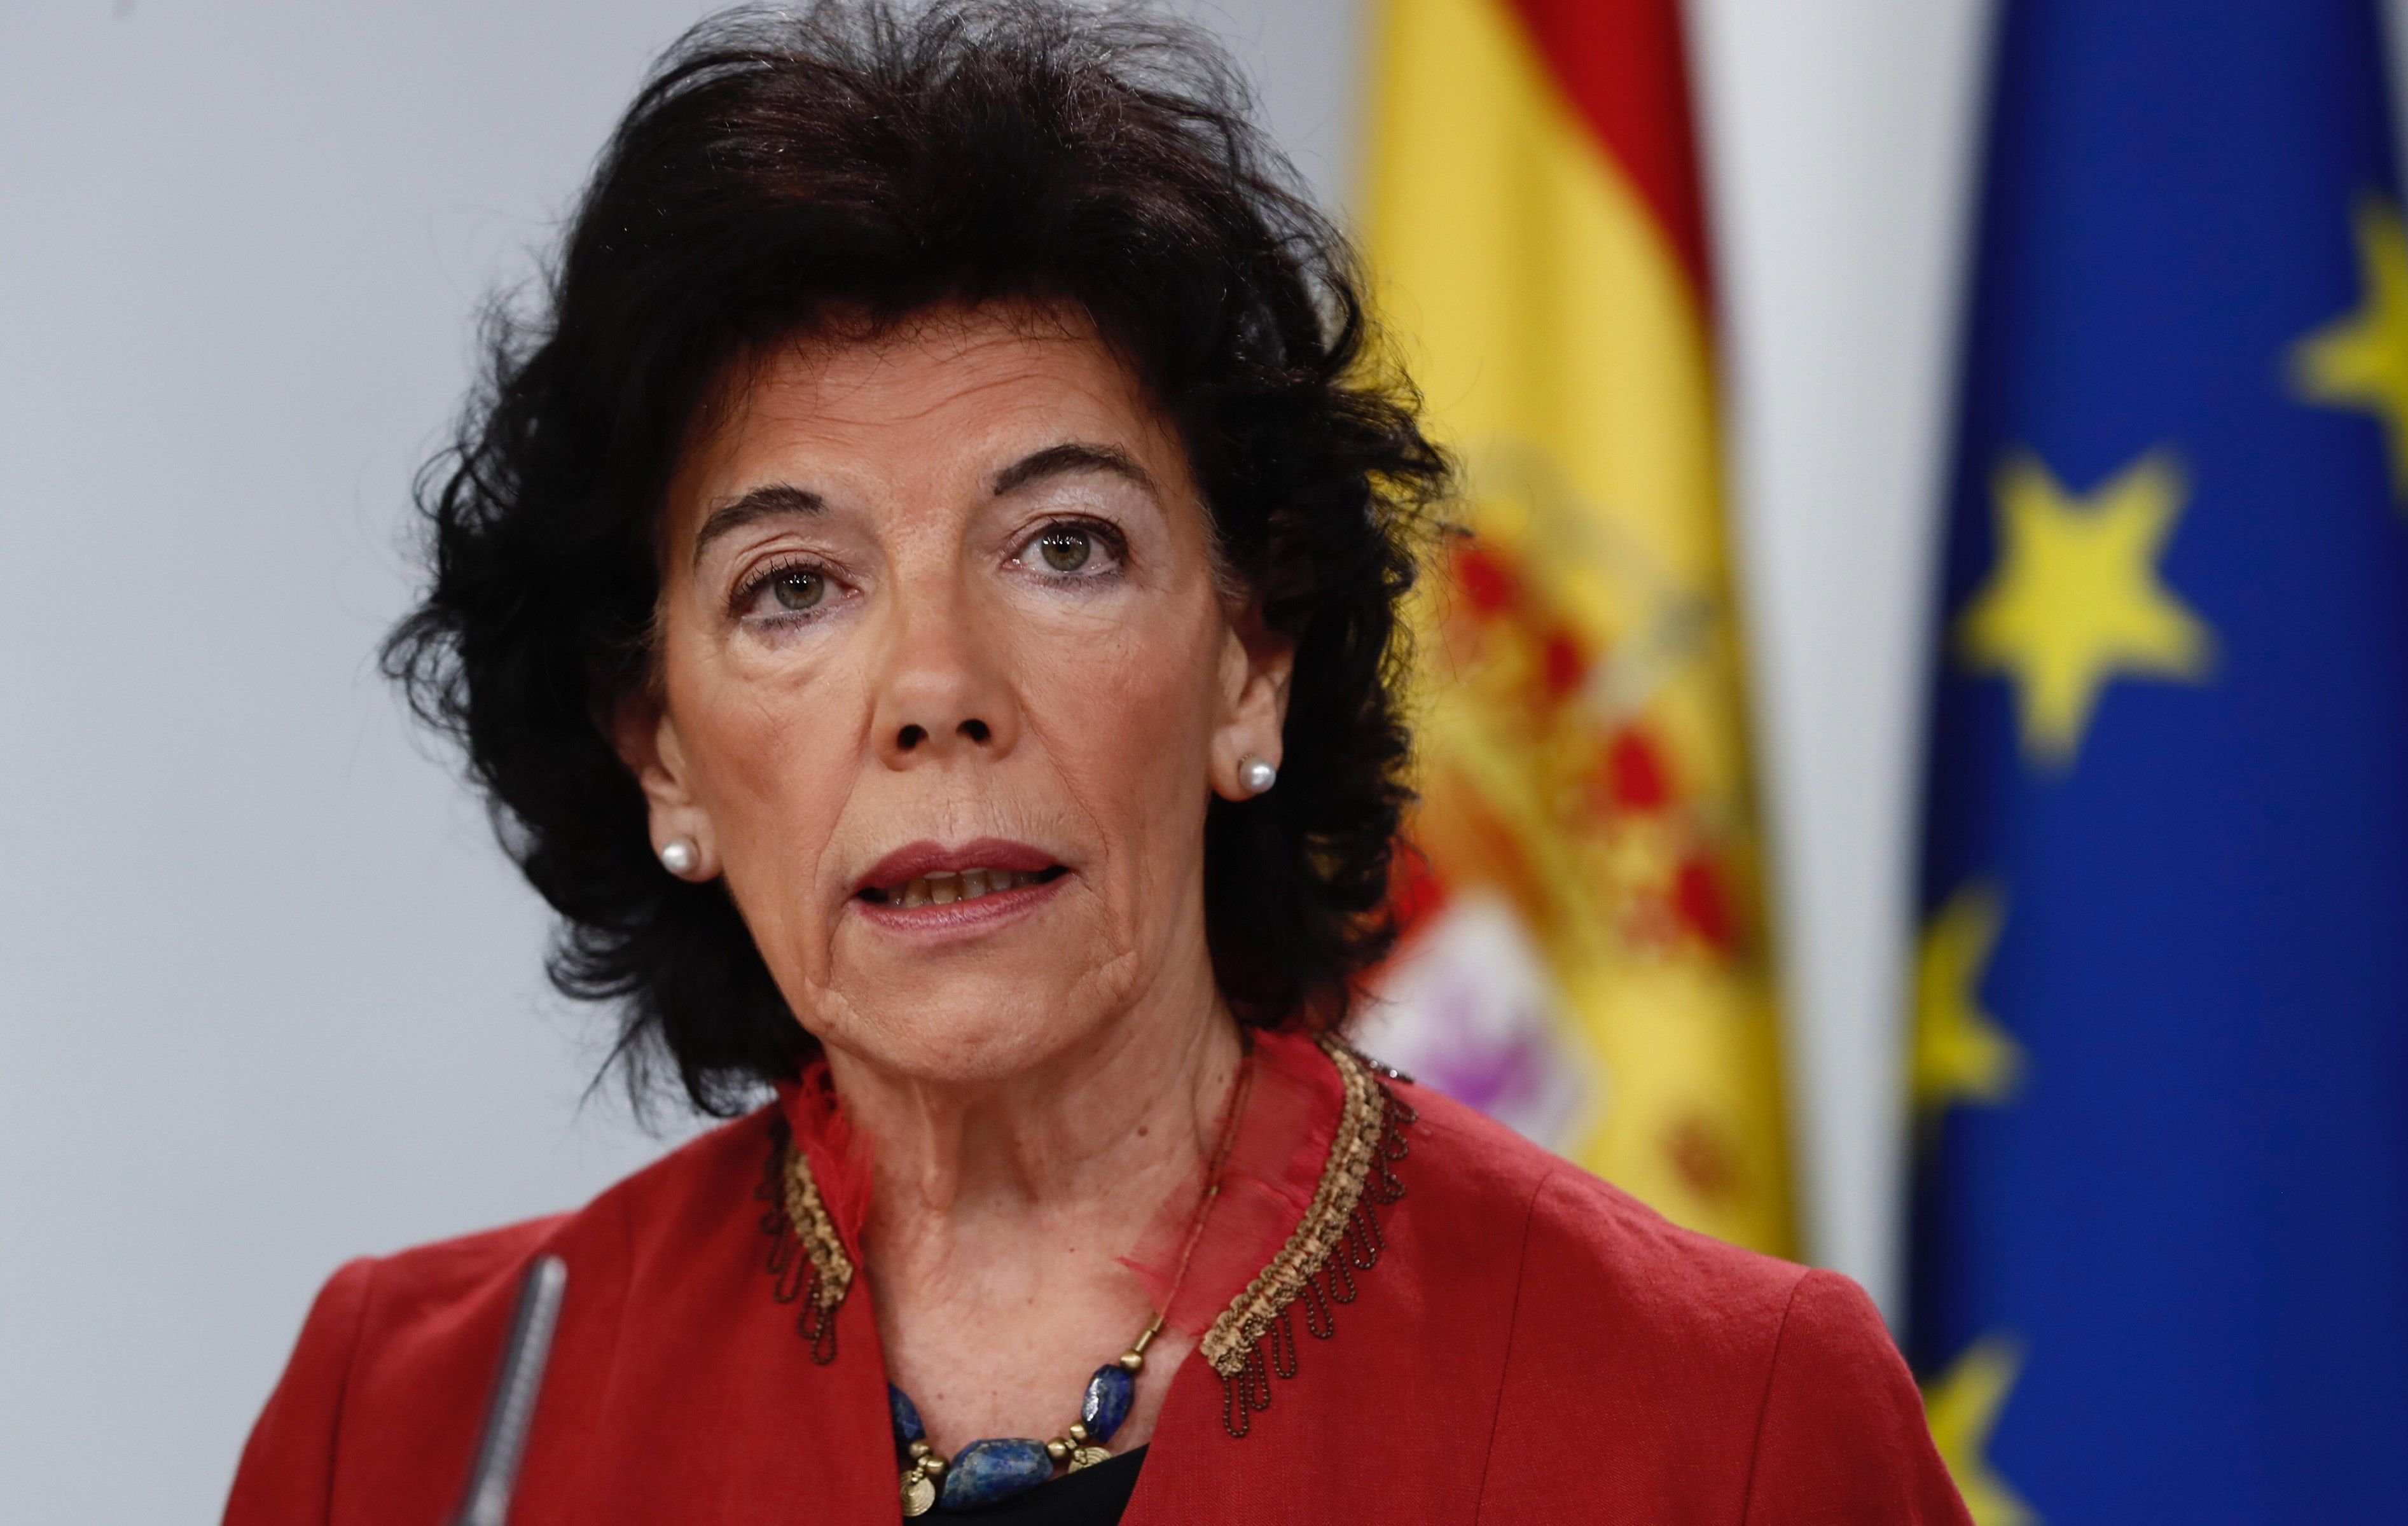 El govern espanyol, després de publicar la tesi de Sánchez: "Toca demanar-li perdó"